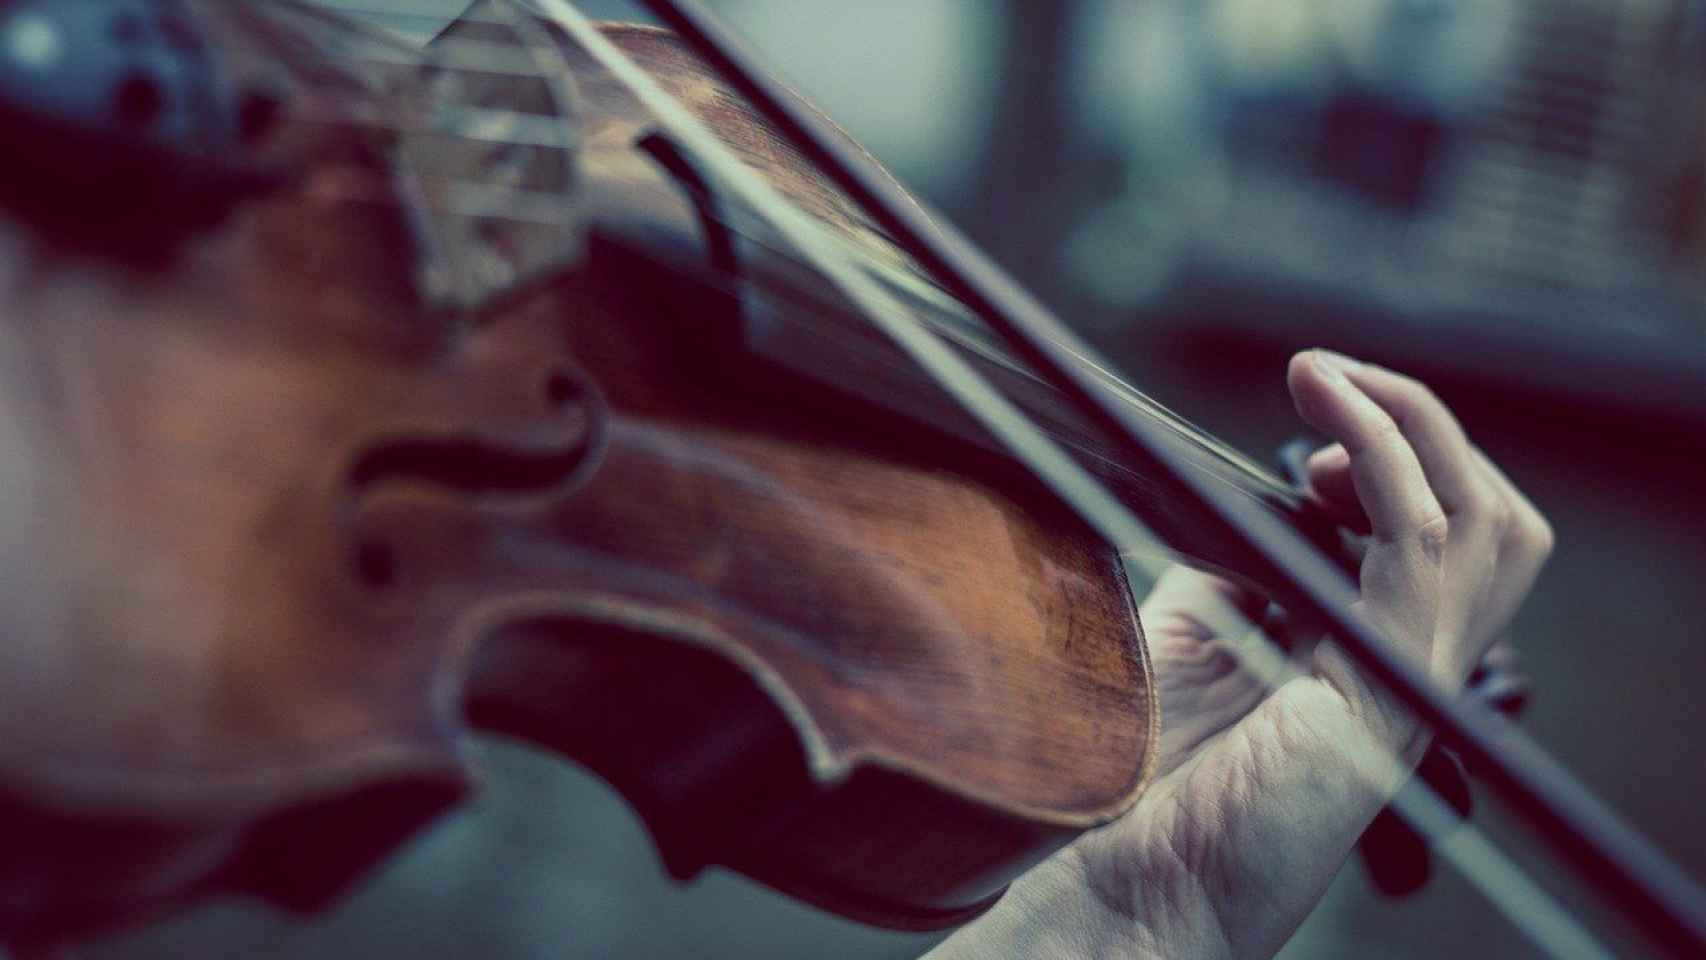 En estas escuelas es posible dominar el violín / Niekverlaan - PIXABAY